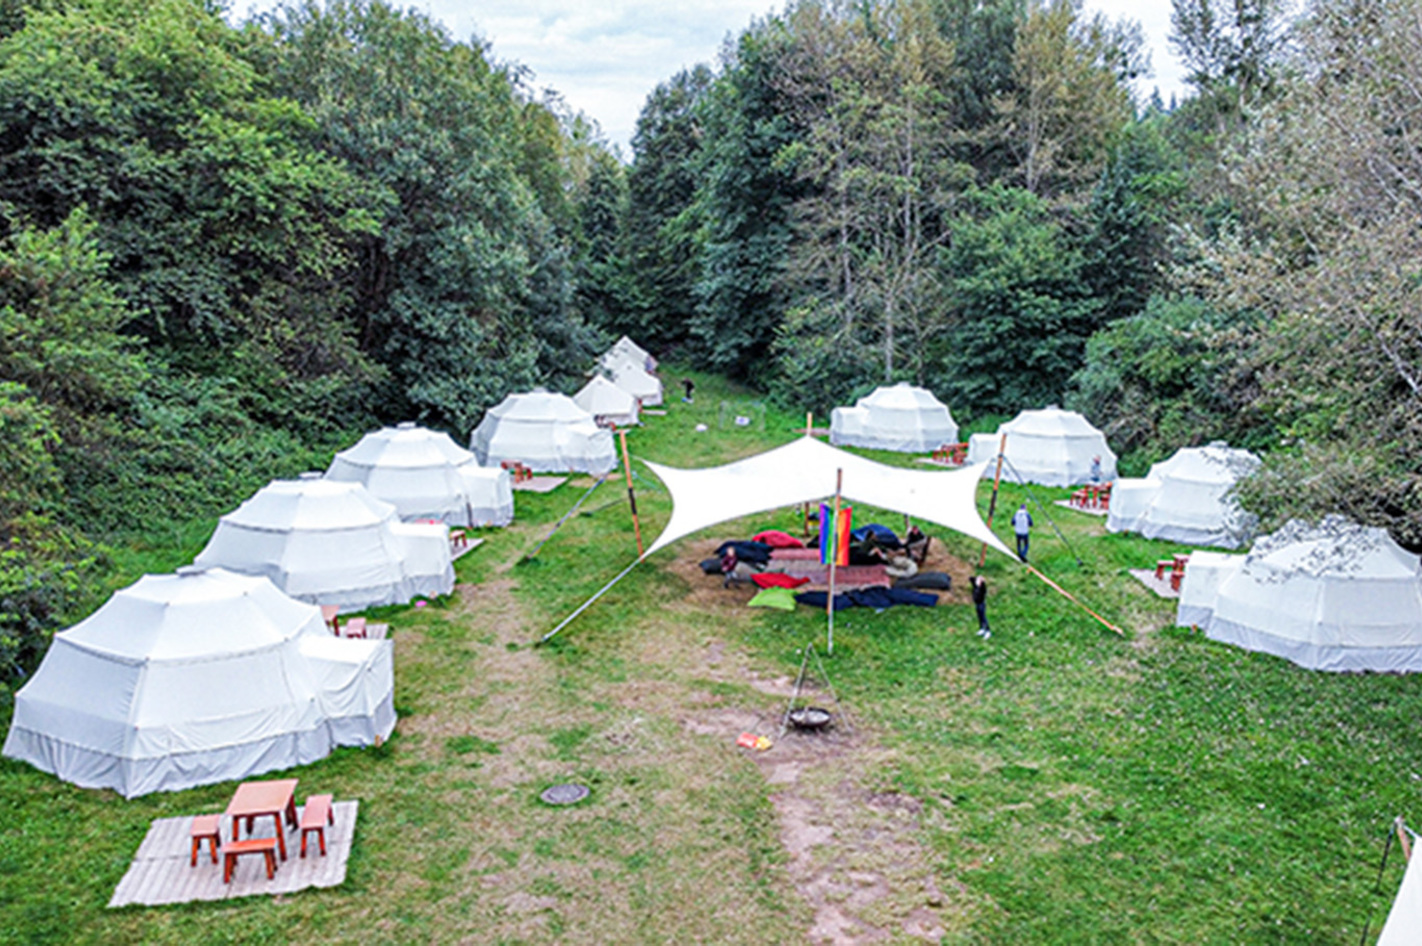 Glamping Losheim im Zelt für 2 (7 Nächte) – Übernachten auf dem Camping Platz mit Glamping-Komfort